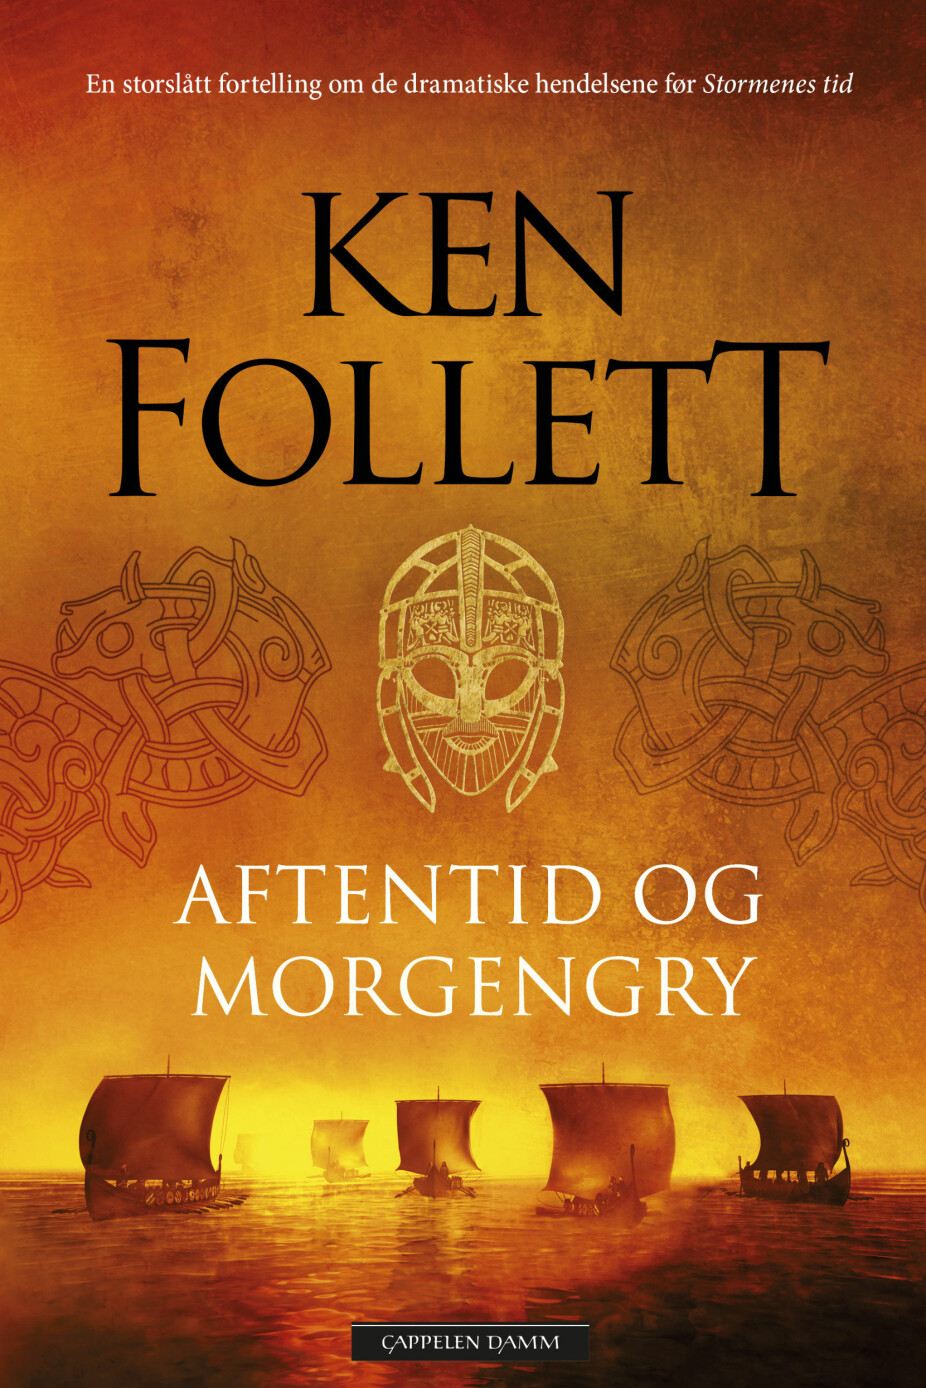 Ken Follett er kjent for både historiske romaner og spionthrillere.